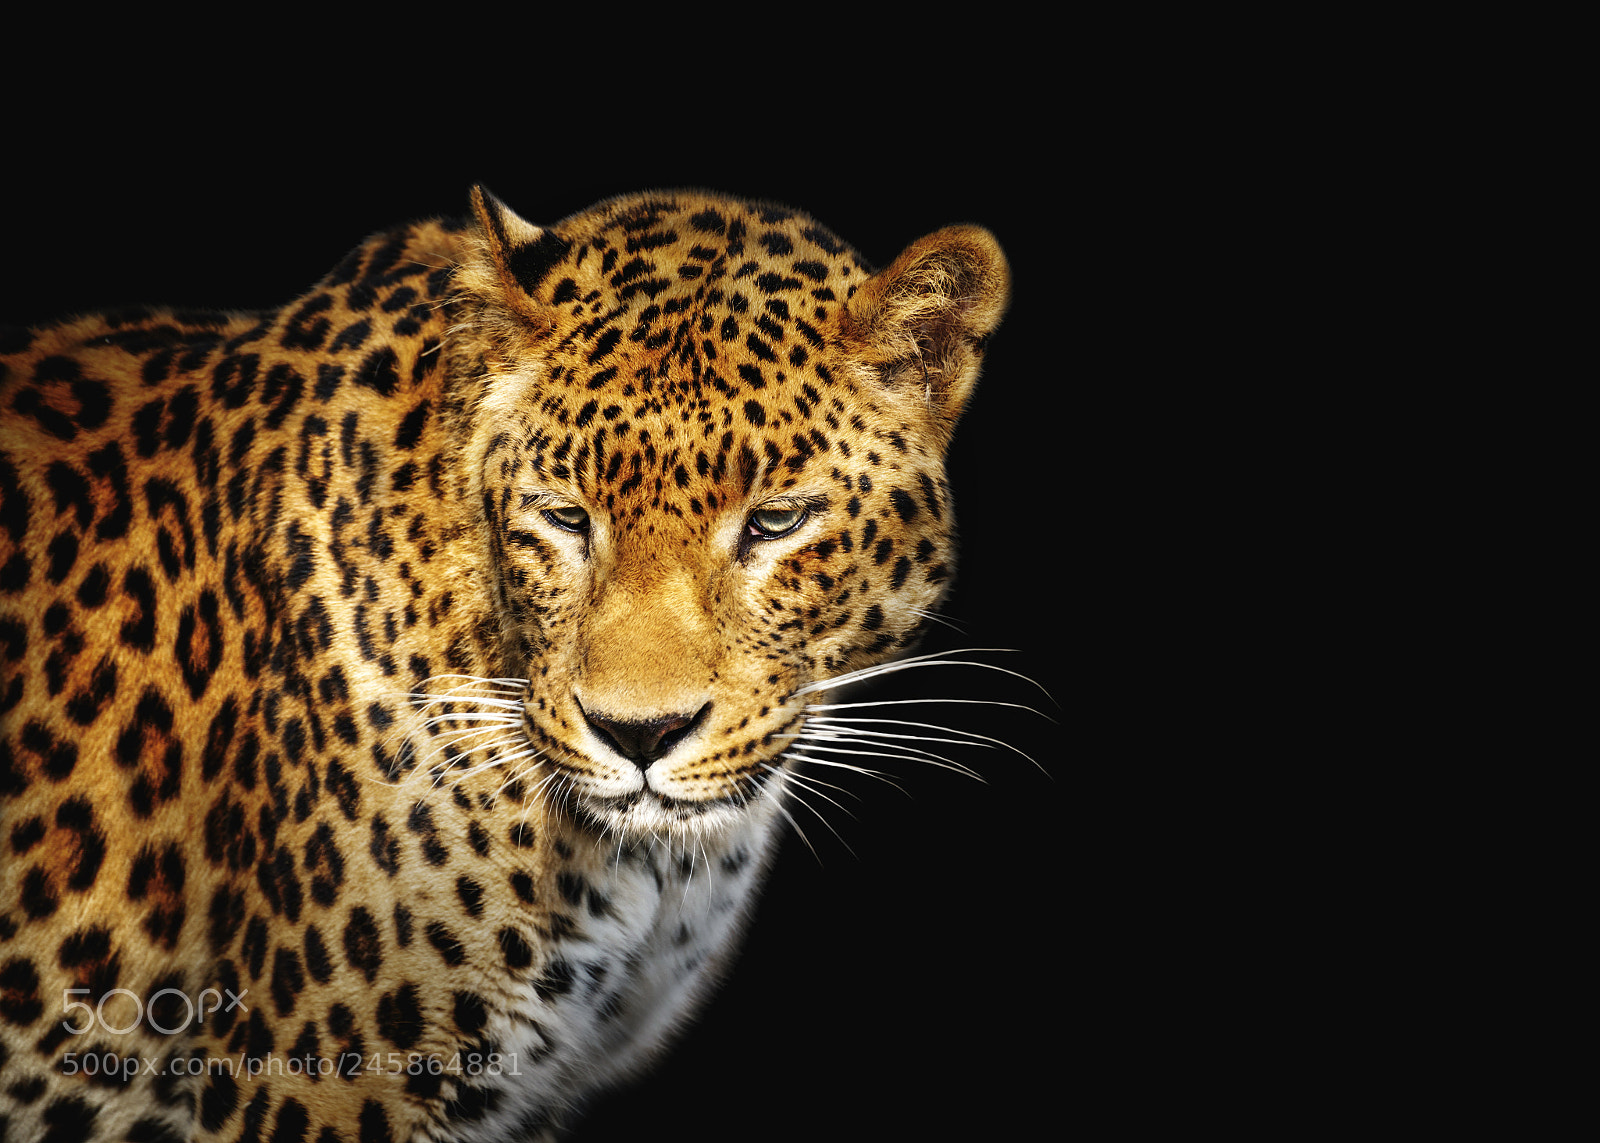 Nikon D3200 sample photo. Close-up leopard portrait on photography